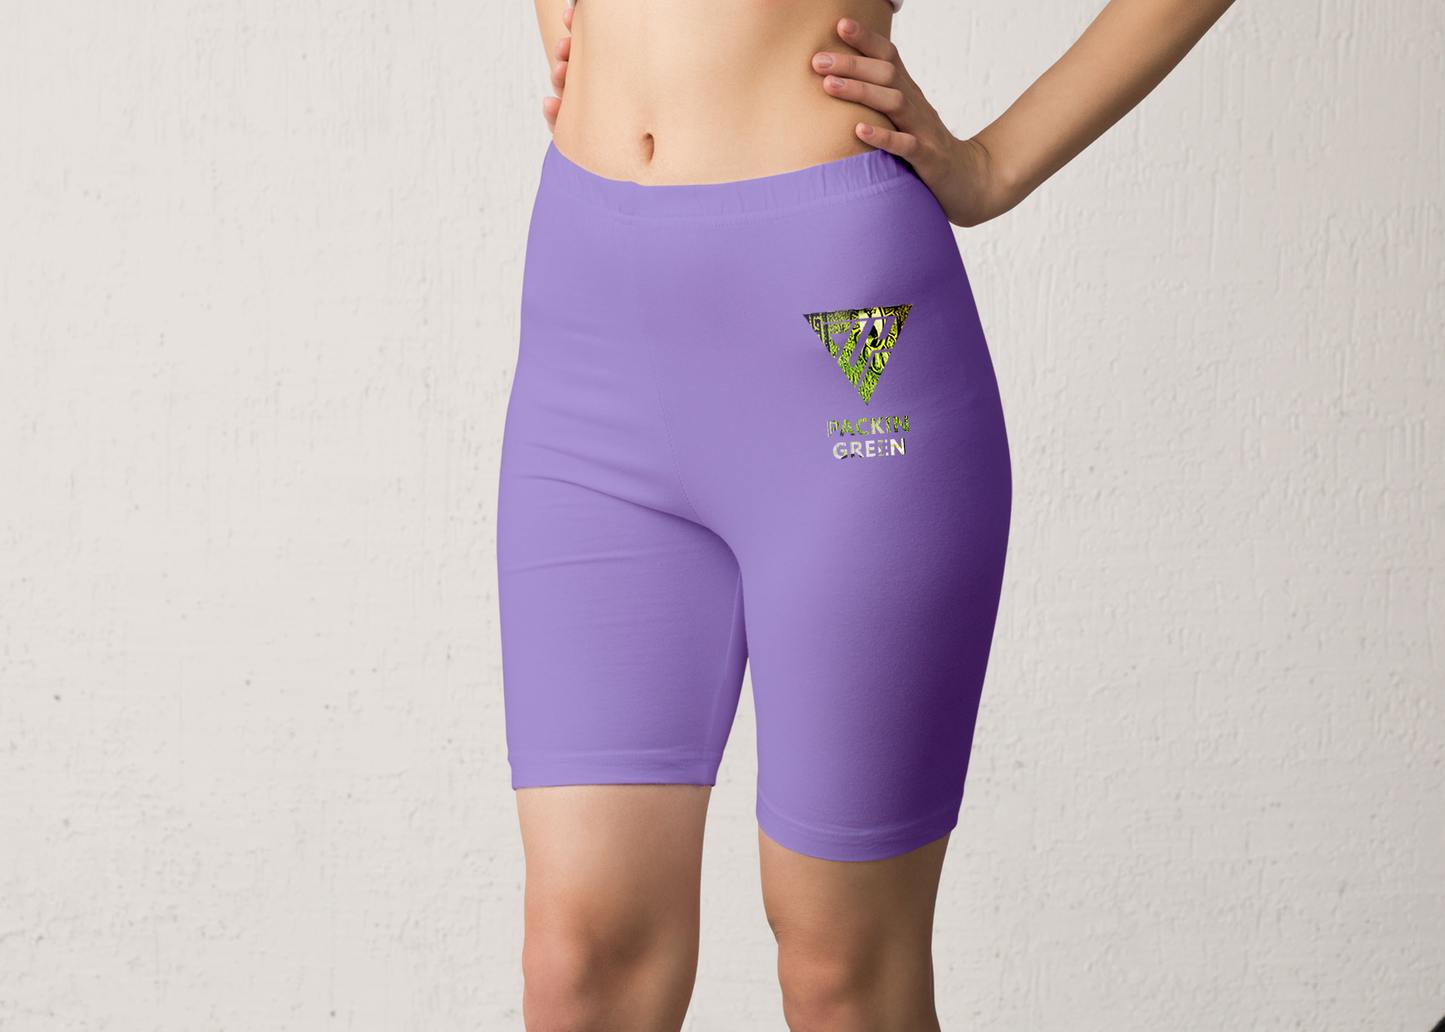 Women's Packin Green Biker Shorts High Waisted (Purple)